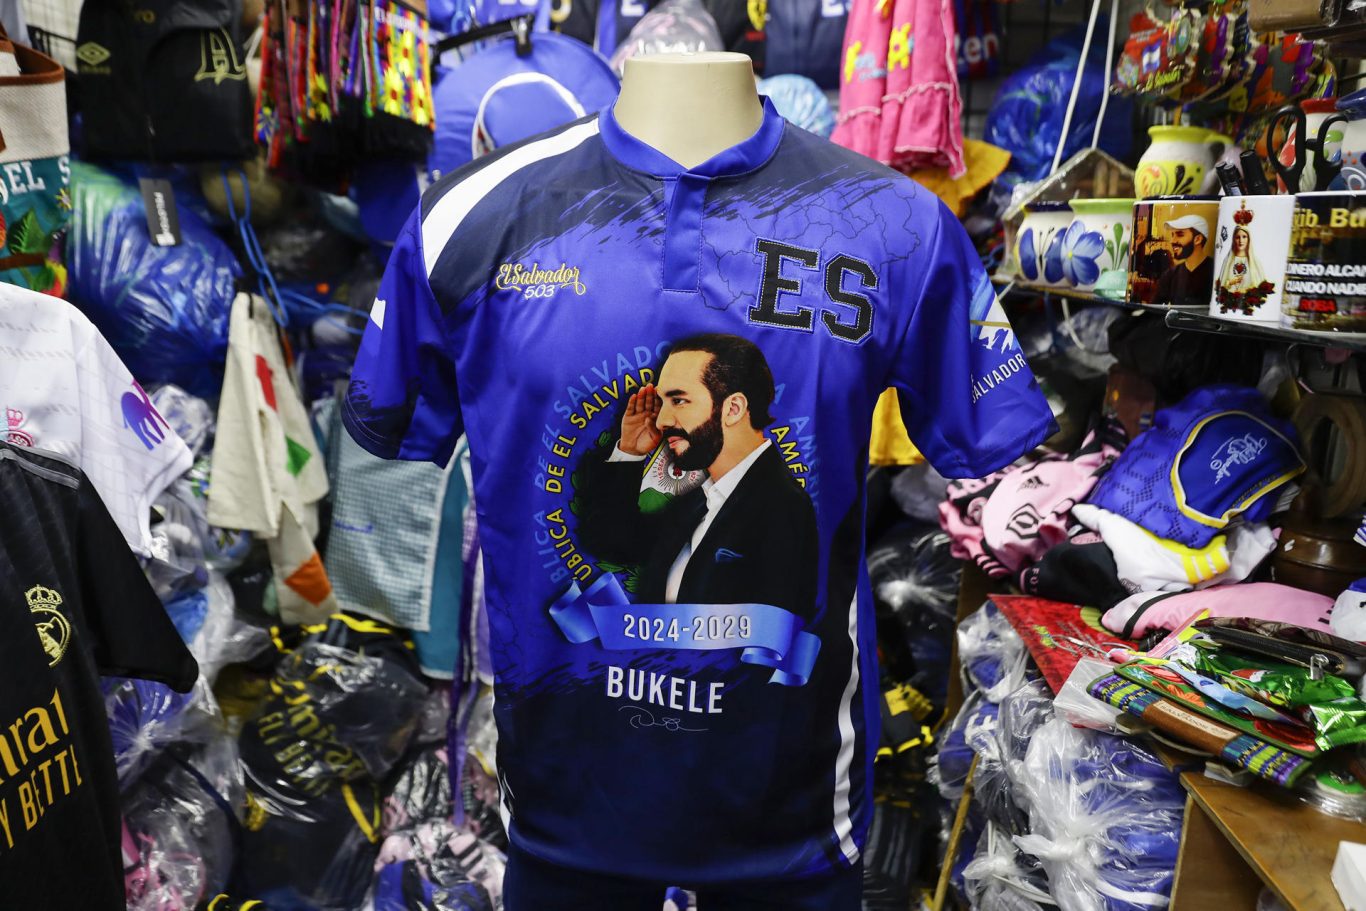 Una camisa alusiva al presidente Nayib Bukele en una venta de ropa en el centro de San Salvador. Foto: EFE/Rodrigo Sura.